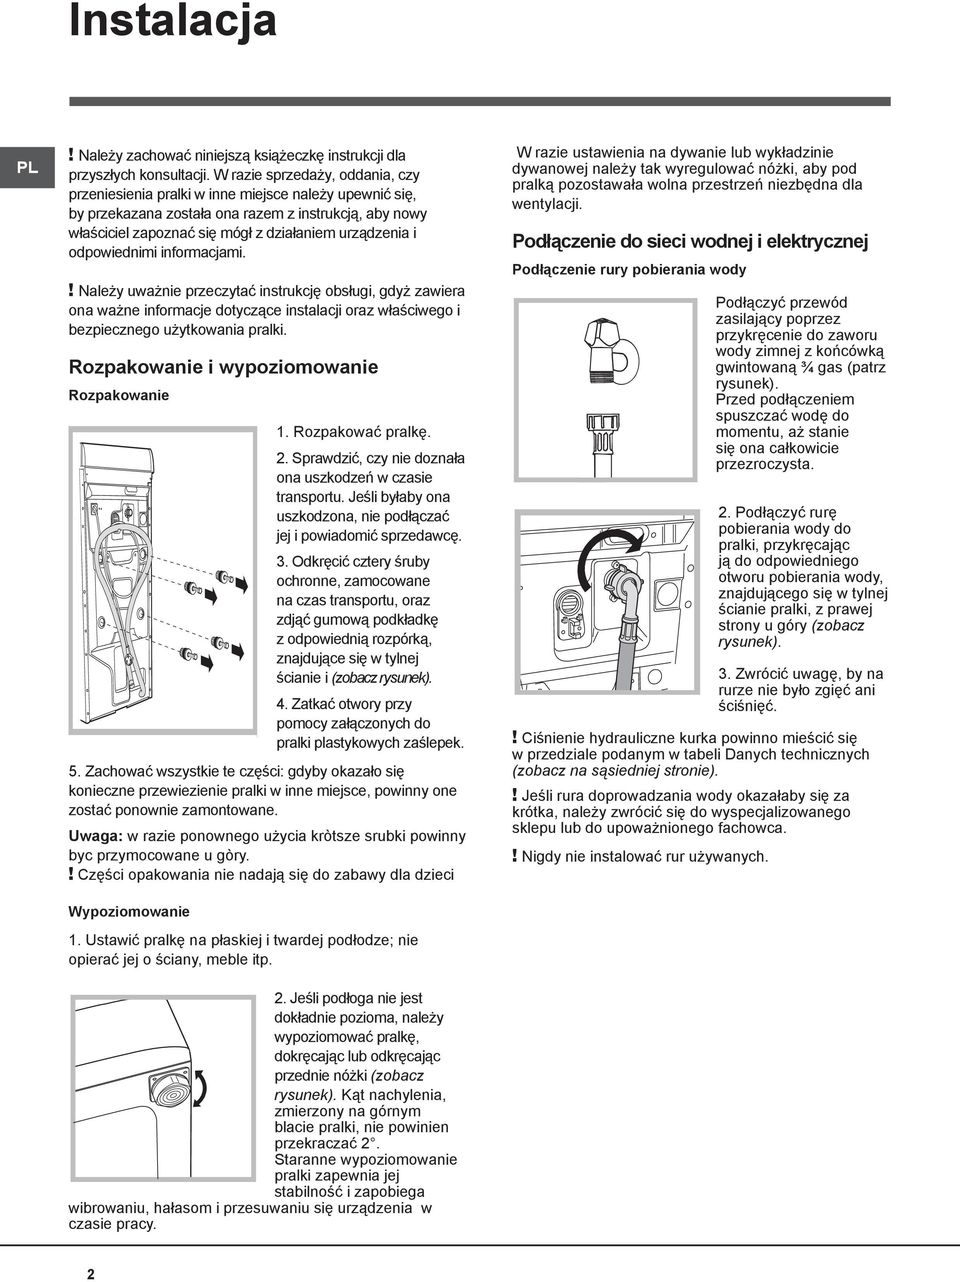 Instrukcja obsługi WITP 102 PRALKA. Spis treści - PDF Darmowe pobieranie